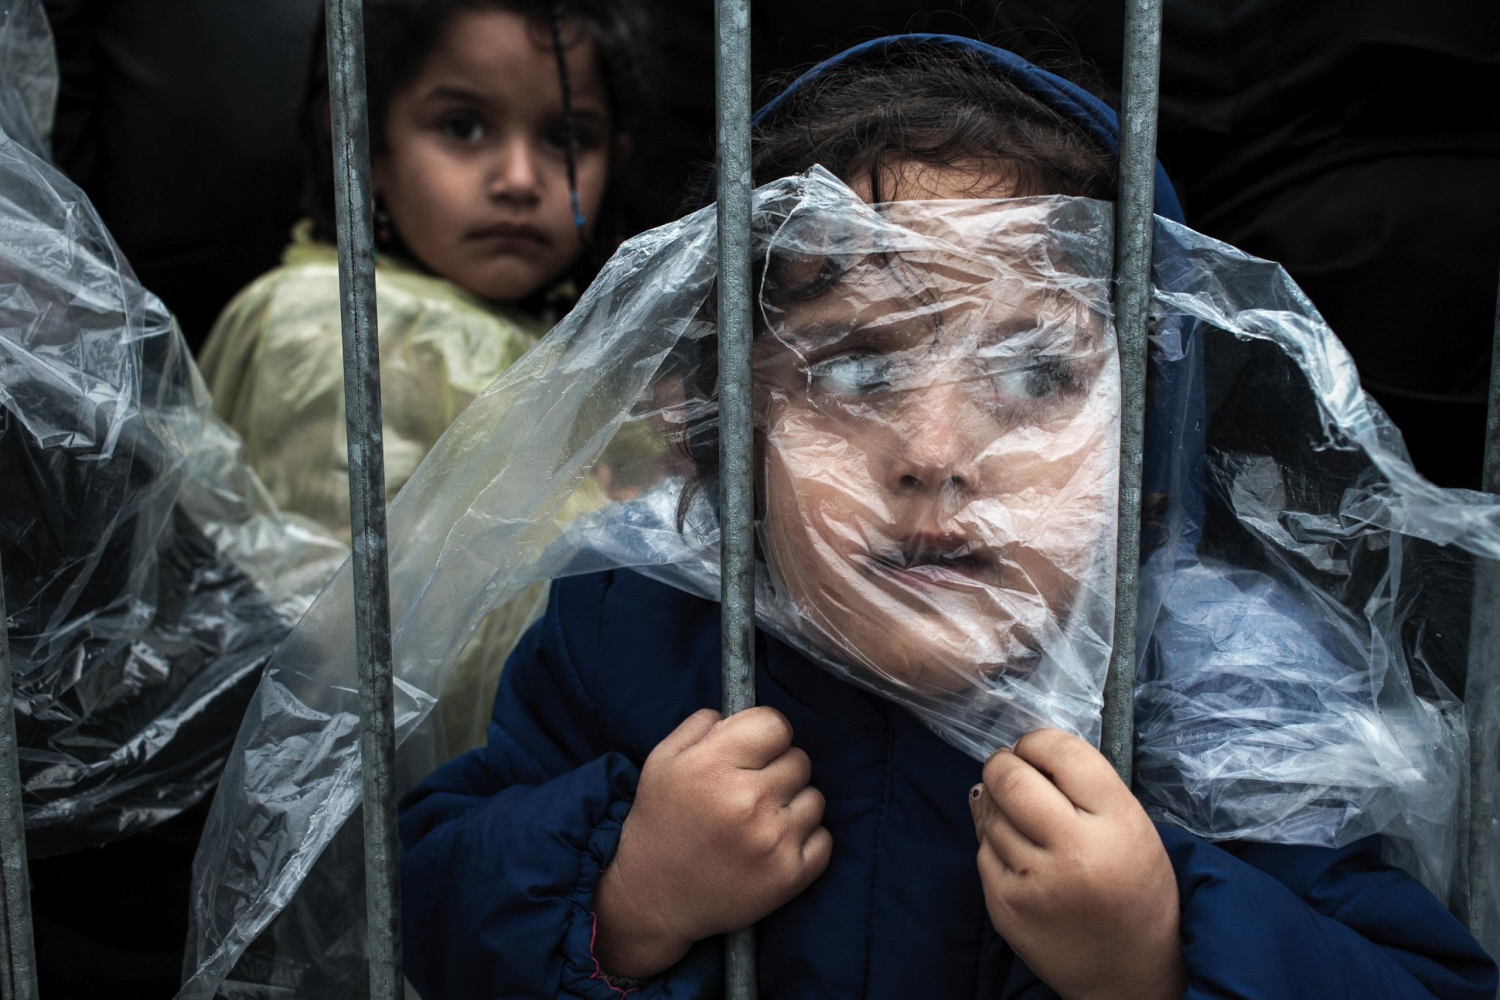 La espera de una menor refugiada, primer premio 'Gente' del World Press Photo